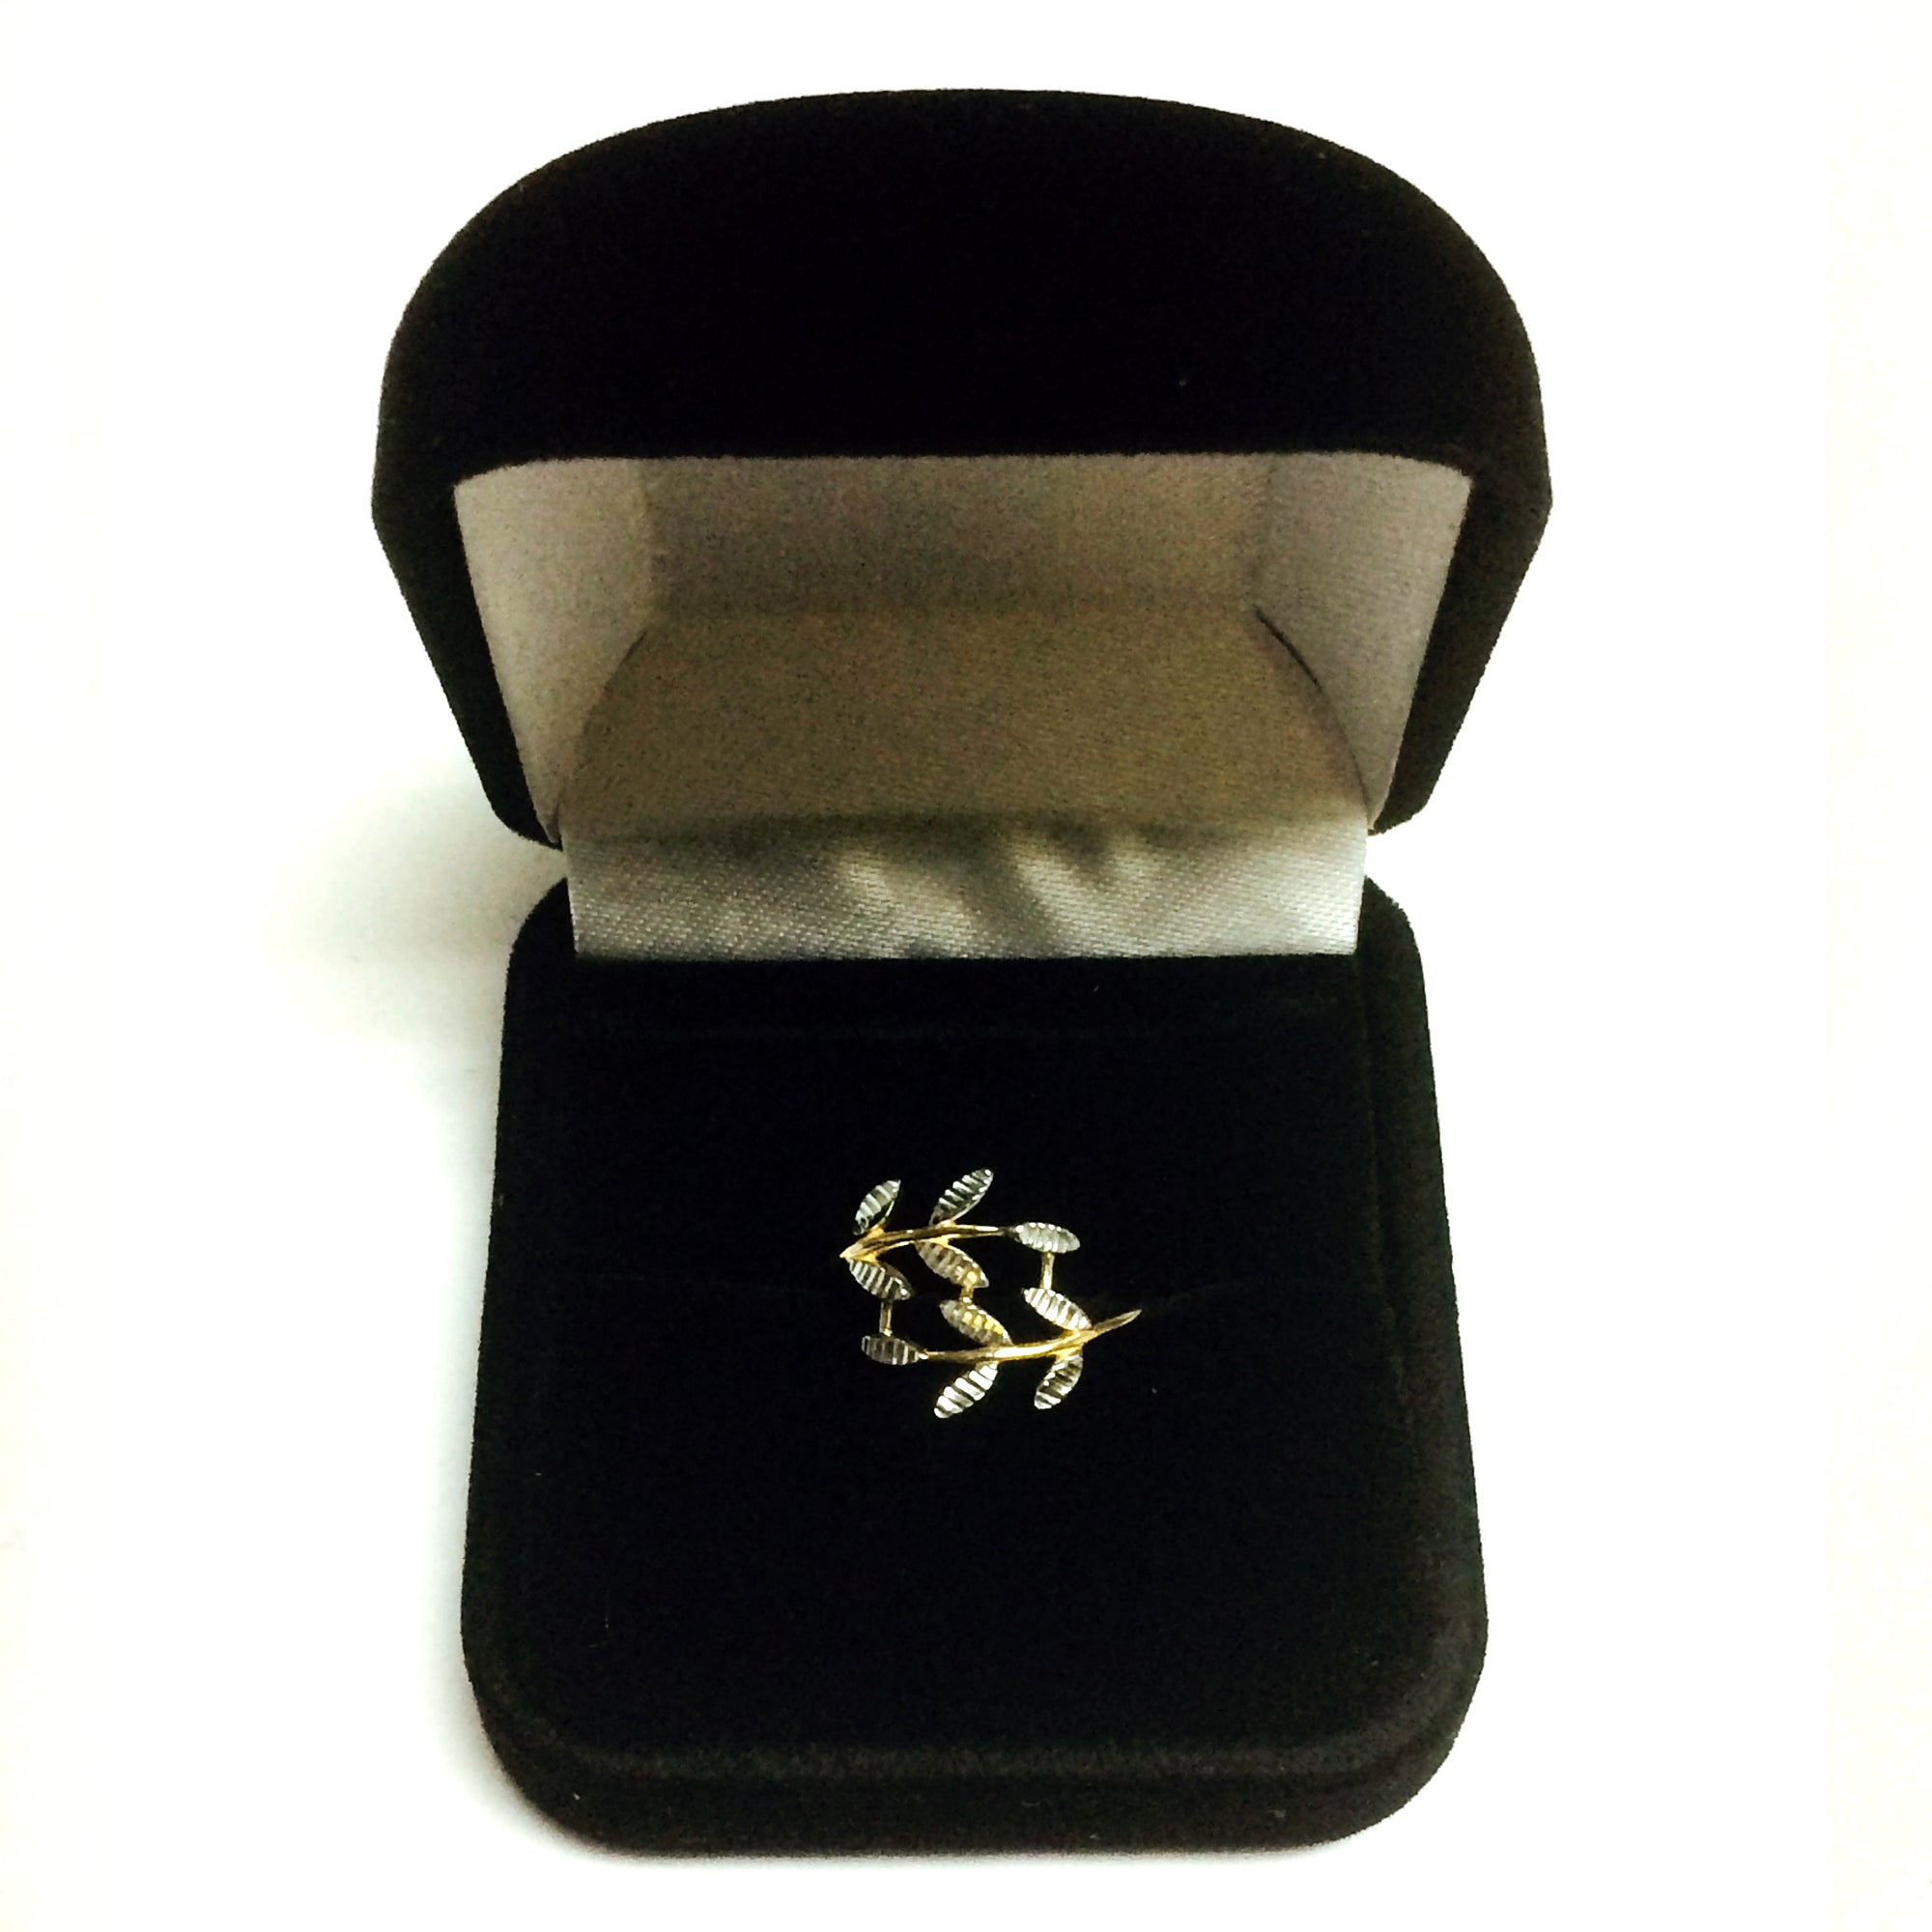 14K tvåfärgad guld diamantslipad olivbladsgren designring, storlek 7 fina designersmycken för män och kvinnor